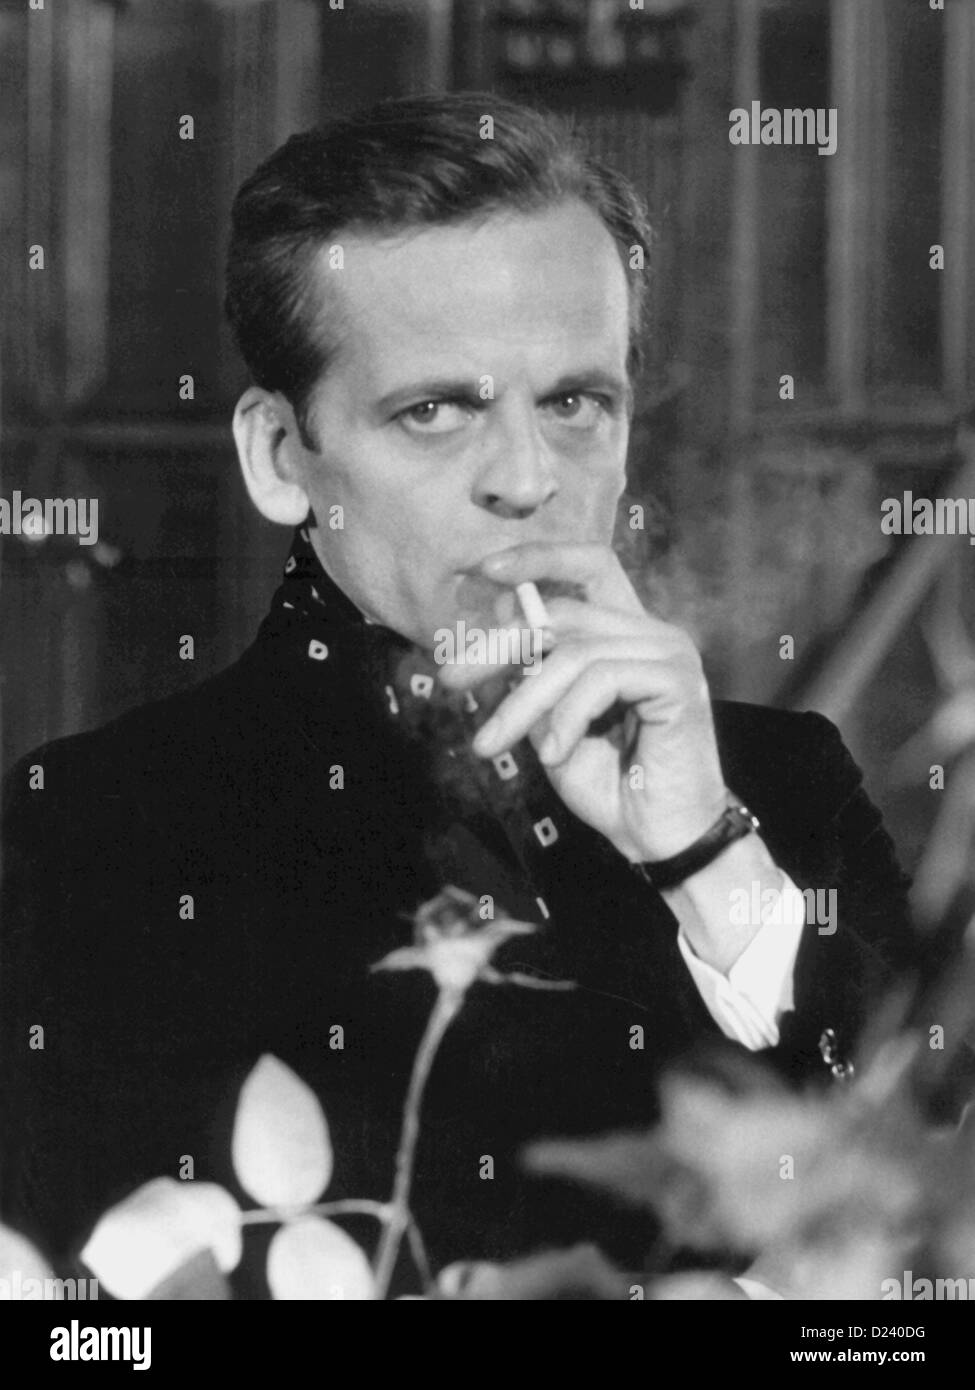 (Afp) - L'acteur allemand Klaus Kinski dans une scène de film de l'Edgar Wallace film 'UN doppia faccia' ('Double Face'), 1969. Un 'enfant terrible' de l'industrie du cinéma, les films de Kinski : 'Buddy Buddy", "Pour quelques dollars de plus', ainsi que 'Aguirre, der Zorn Gottes' ('Aguirre, la colère de Dieu') et 'Nosferatu : Phantom der Nacht' ('Nosferatu le Vampire'). Kinski est né le 18 octobre 1926 à Danzig, Allemagne (aujourd'hui Gdansk, Pologne) sous le nom de Nikolaus Guenther Nakszynski et mort le 23 novembre 1991 à Lagunitas, en Californie, d'une crise cardiaque. Banque D'Images